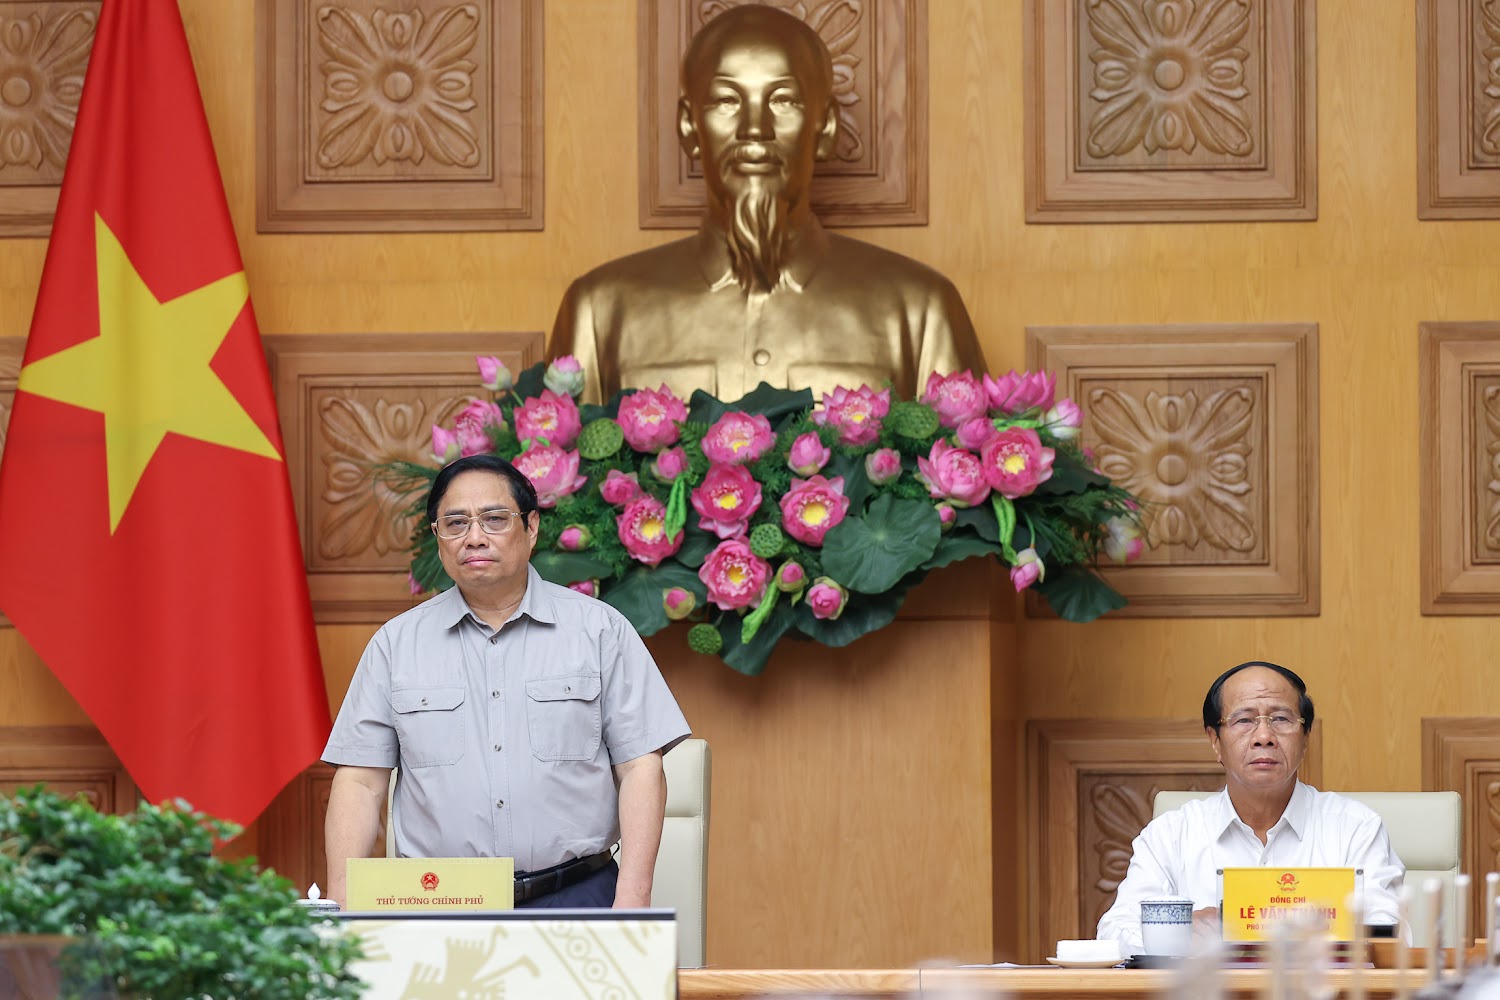 CẬP NHẬT: Thủ tướng Phạm Minh Chính triệu tập cuộc họp ứng phó khẩn cấp bão số 4